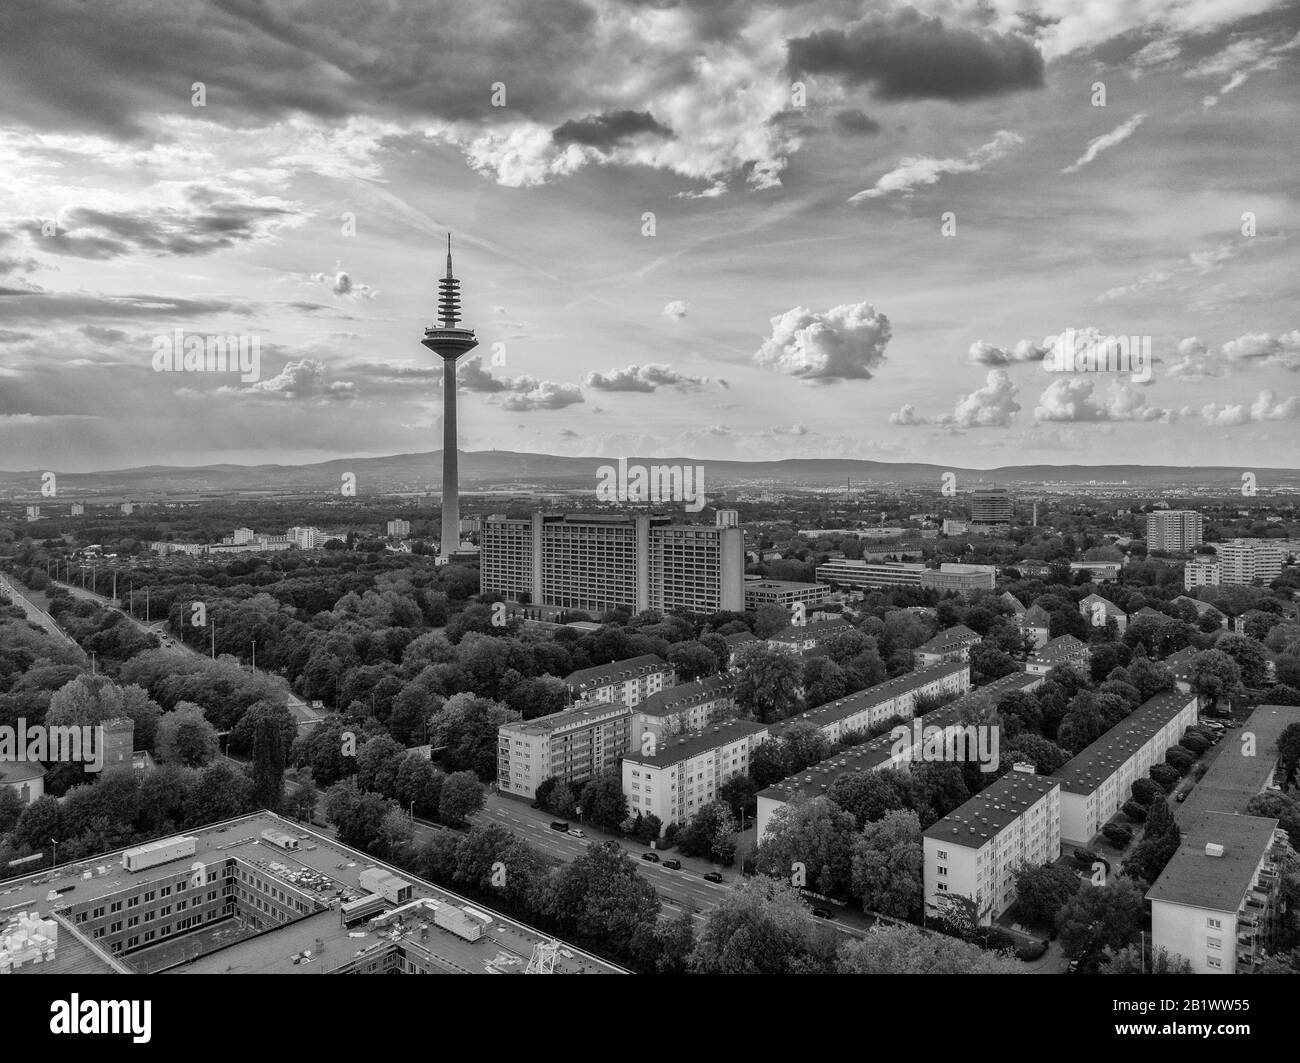 Photographier avec un drone de haute altitude de la tour des télécommunications, nommée Europaturm, et la Banque fédérale (Bundesbank) à Francfort, en Allemagne Banque D'Images